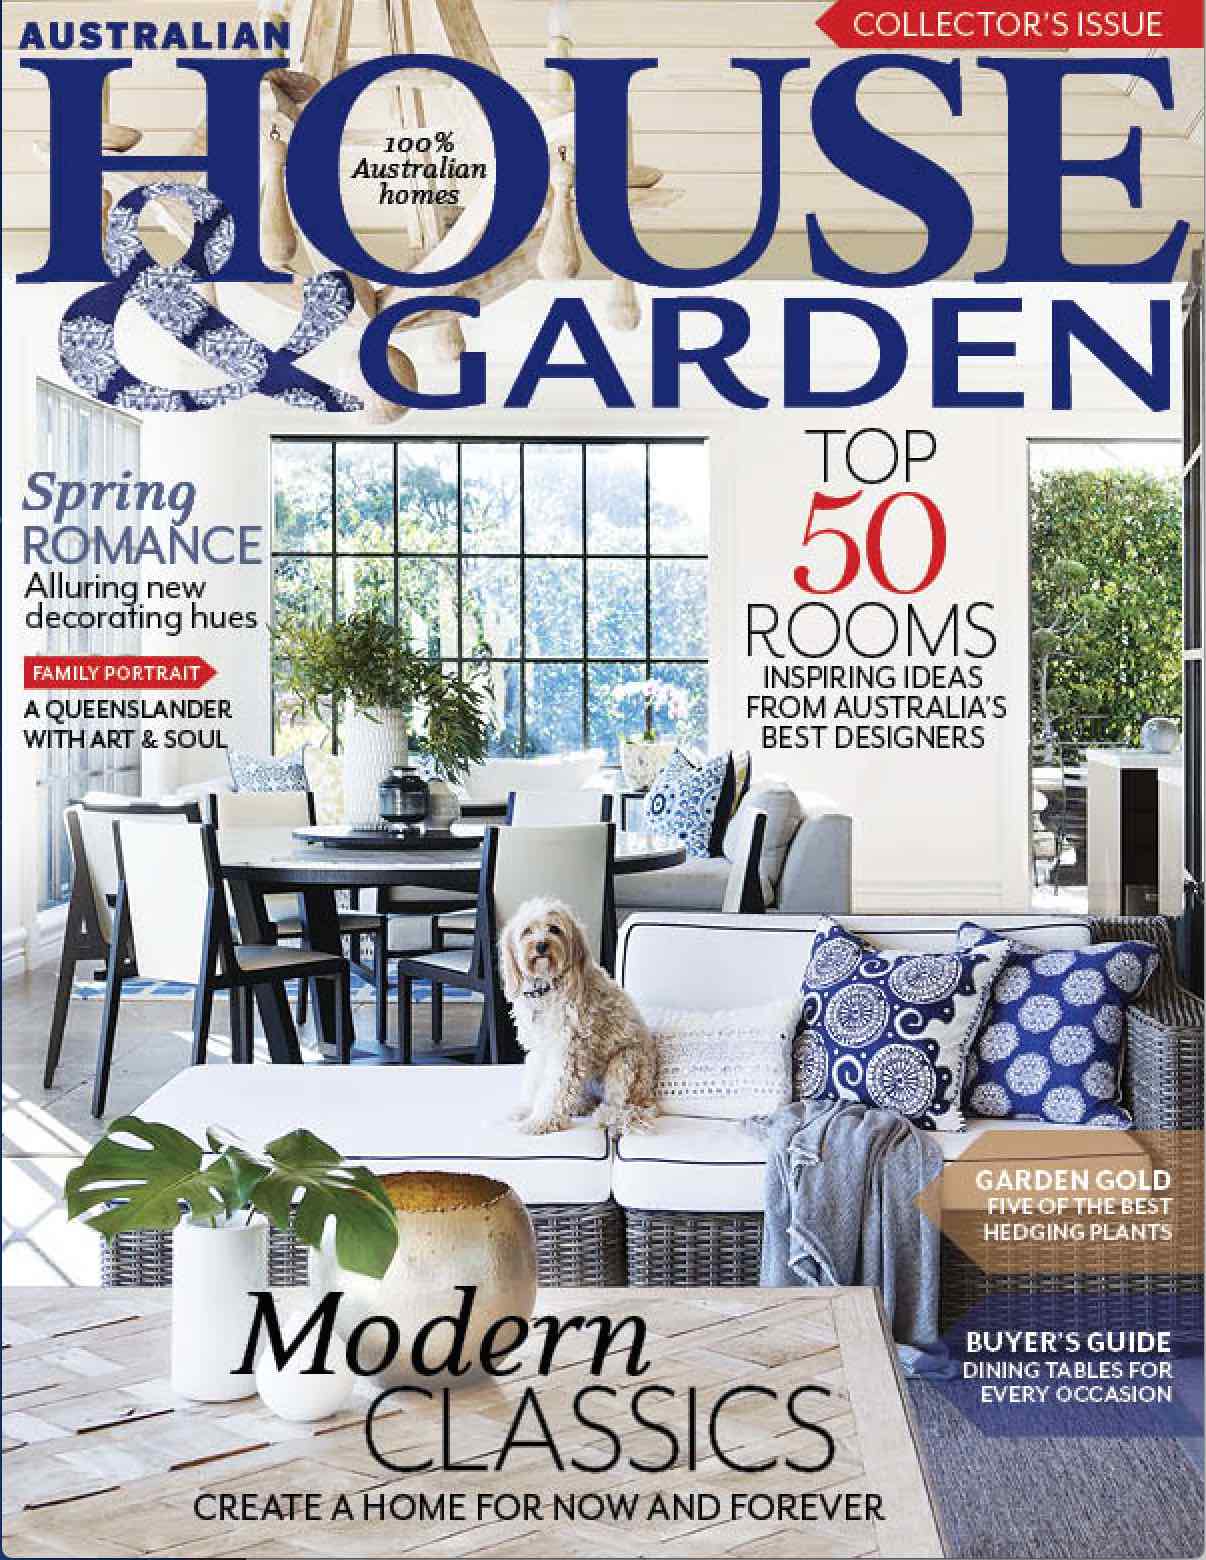 House Garden Top 50 Camilla Molders Design